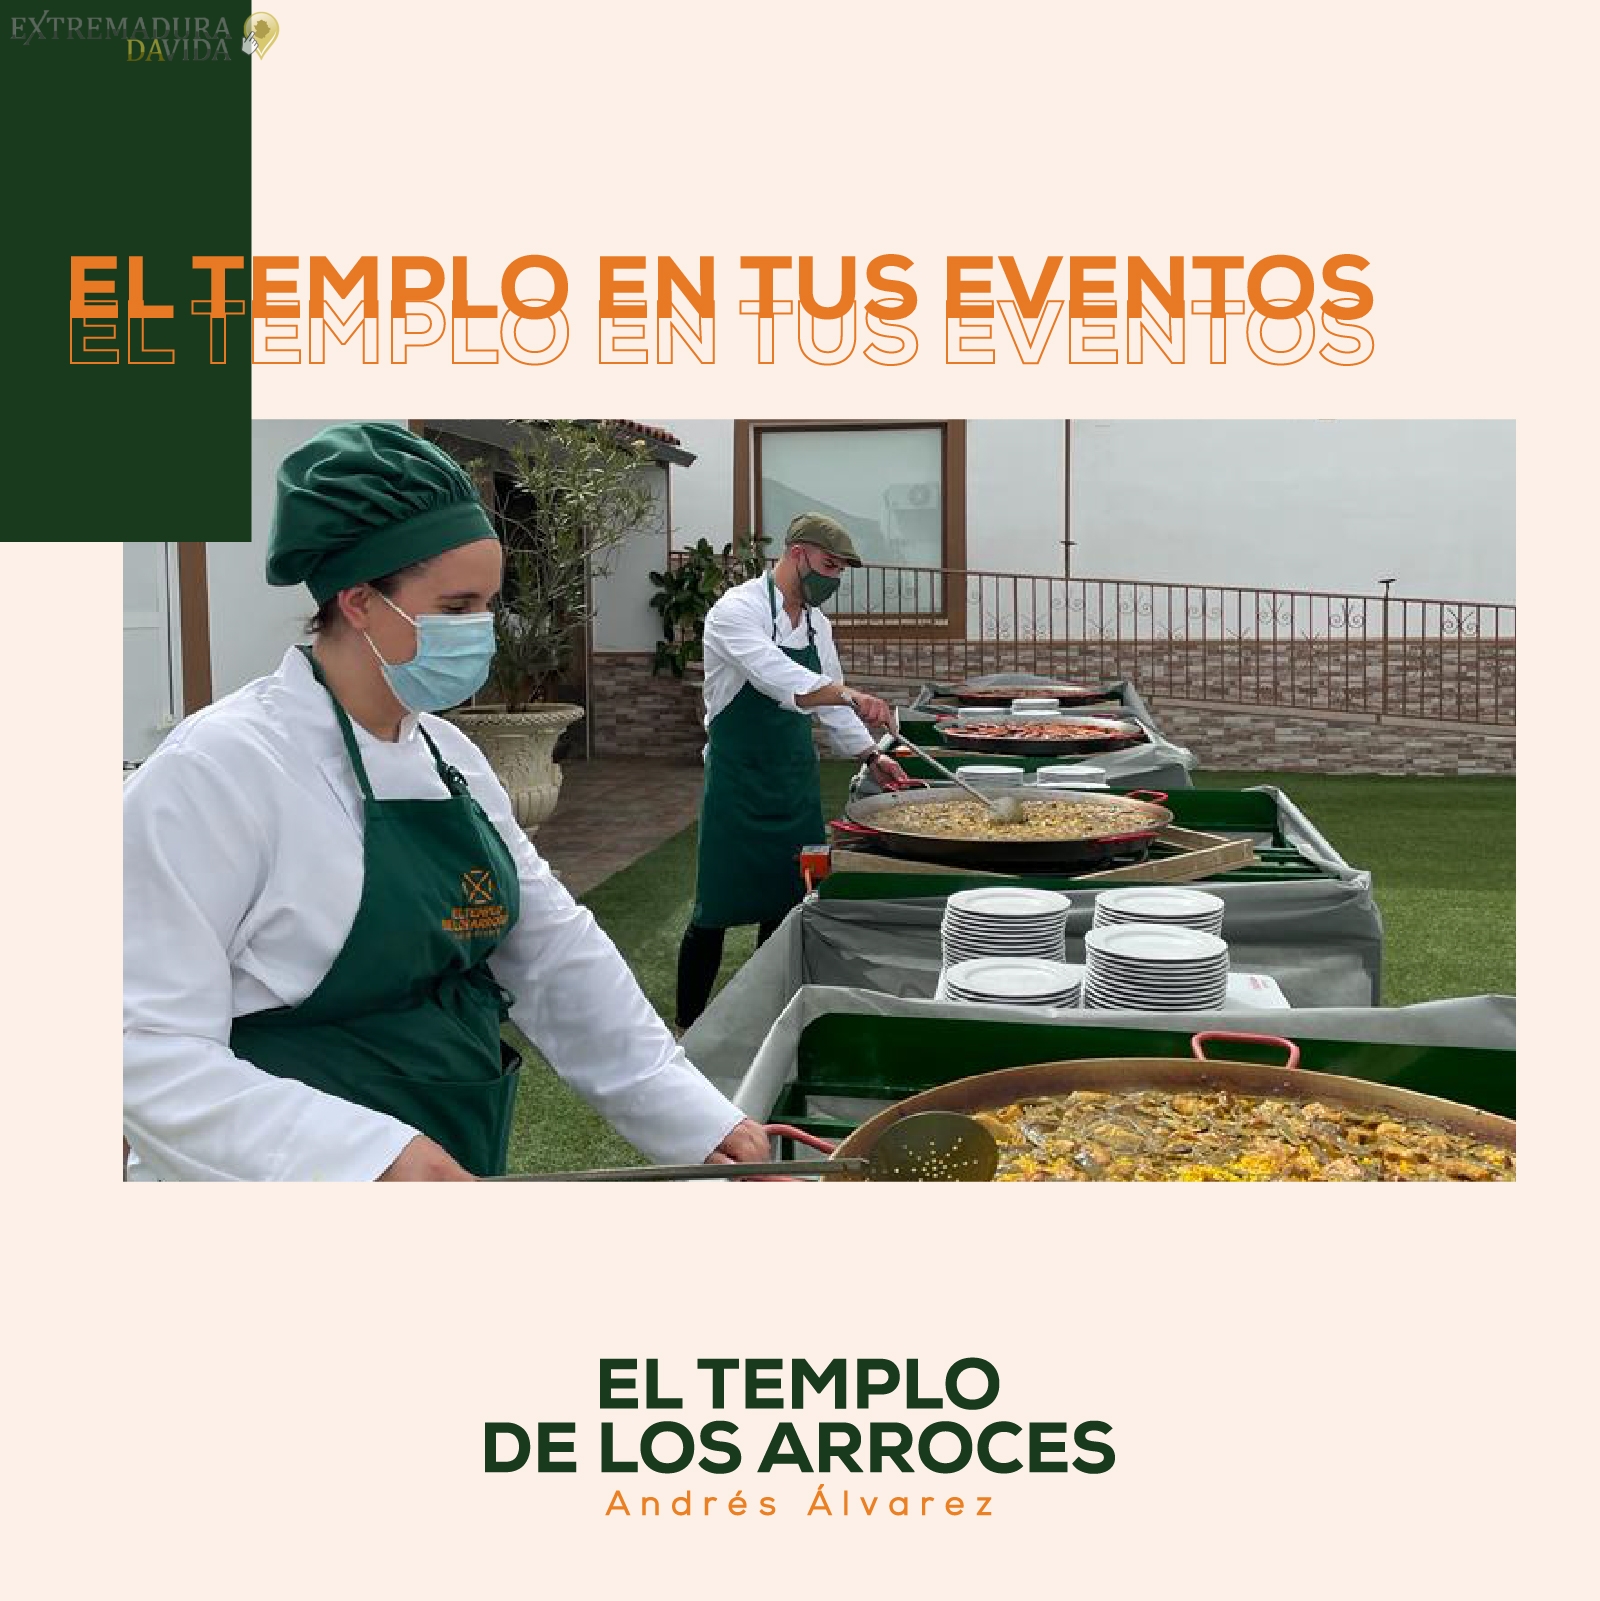 Catering En Extremadura Comida para llevar en Mérida EL TEMPLO DE LOS ARROCES